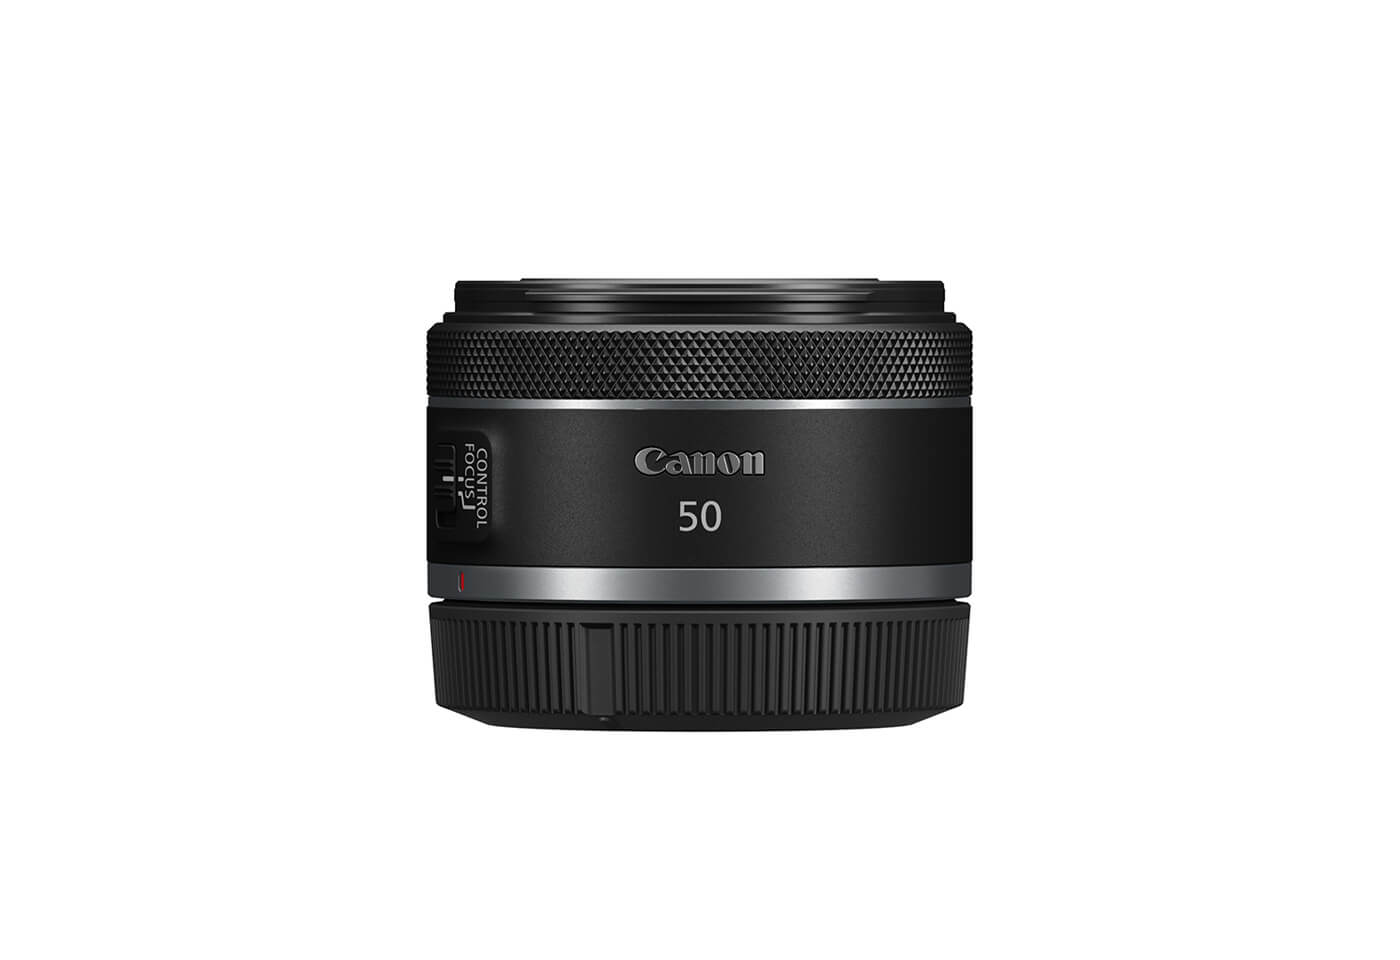 Side profile image of RF 50mm f/1.8 STM prime lens